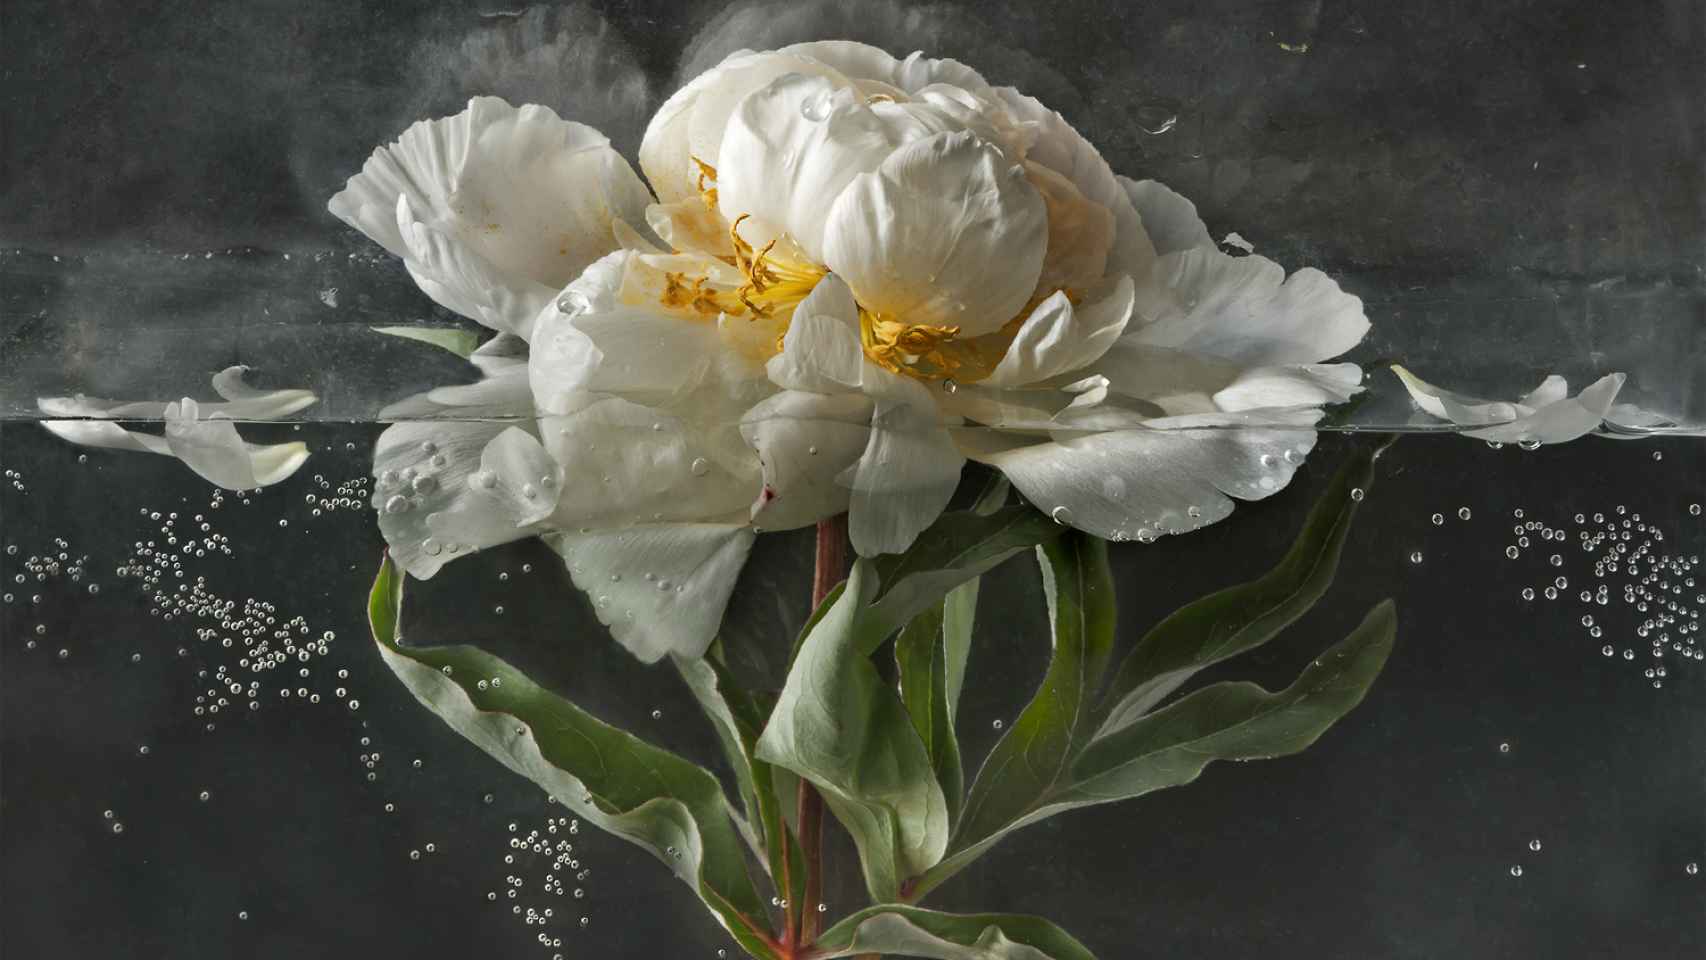 La peonia es una de las flores que muestra Pilar Pequeño en esta muestra.